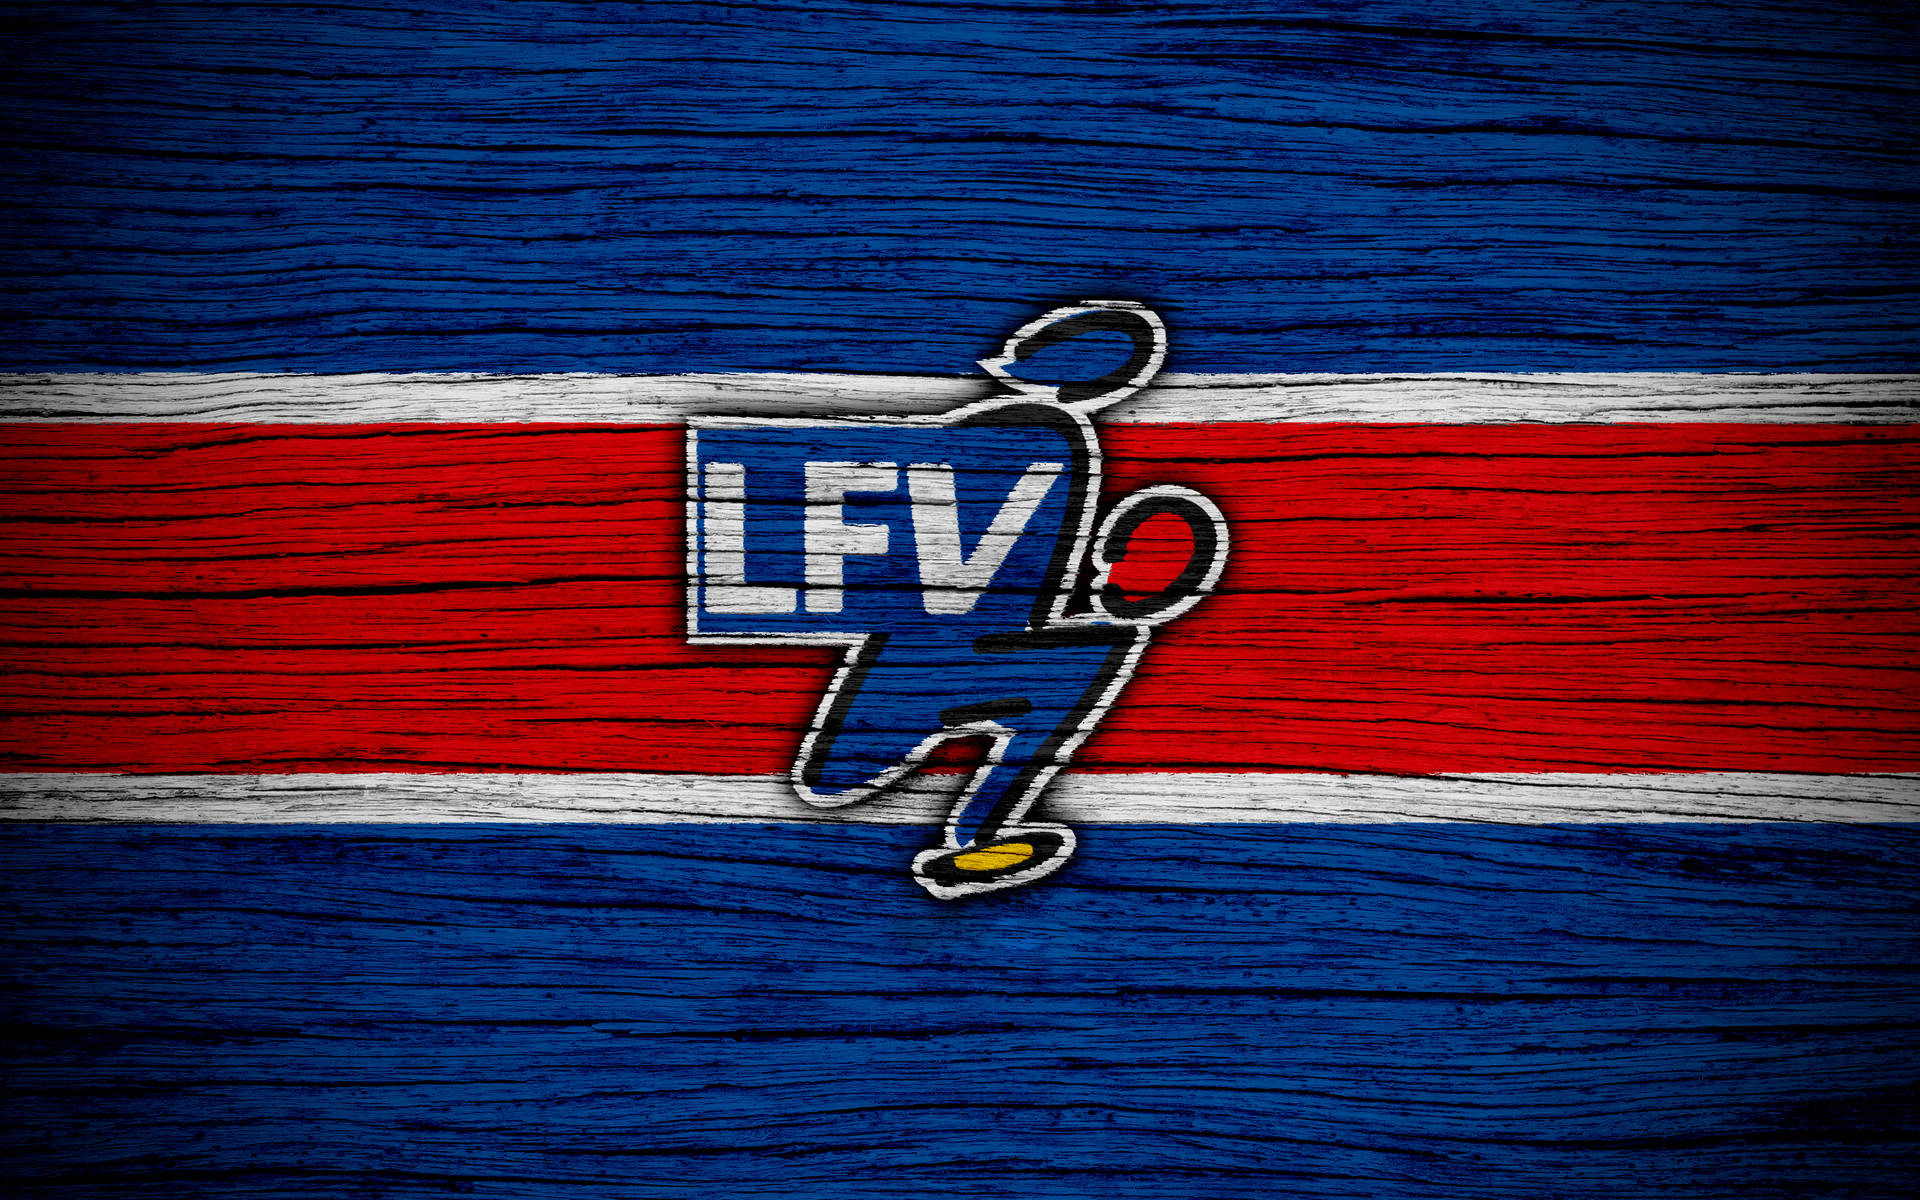 Liechtensteinsfotbollslag. Wallpaper